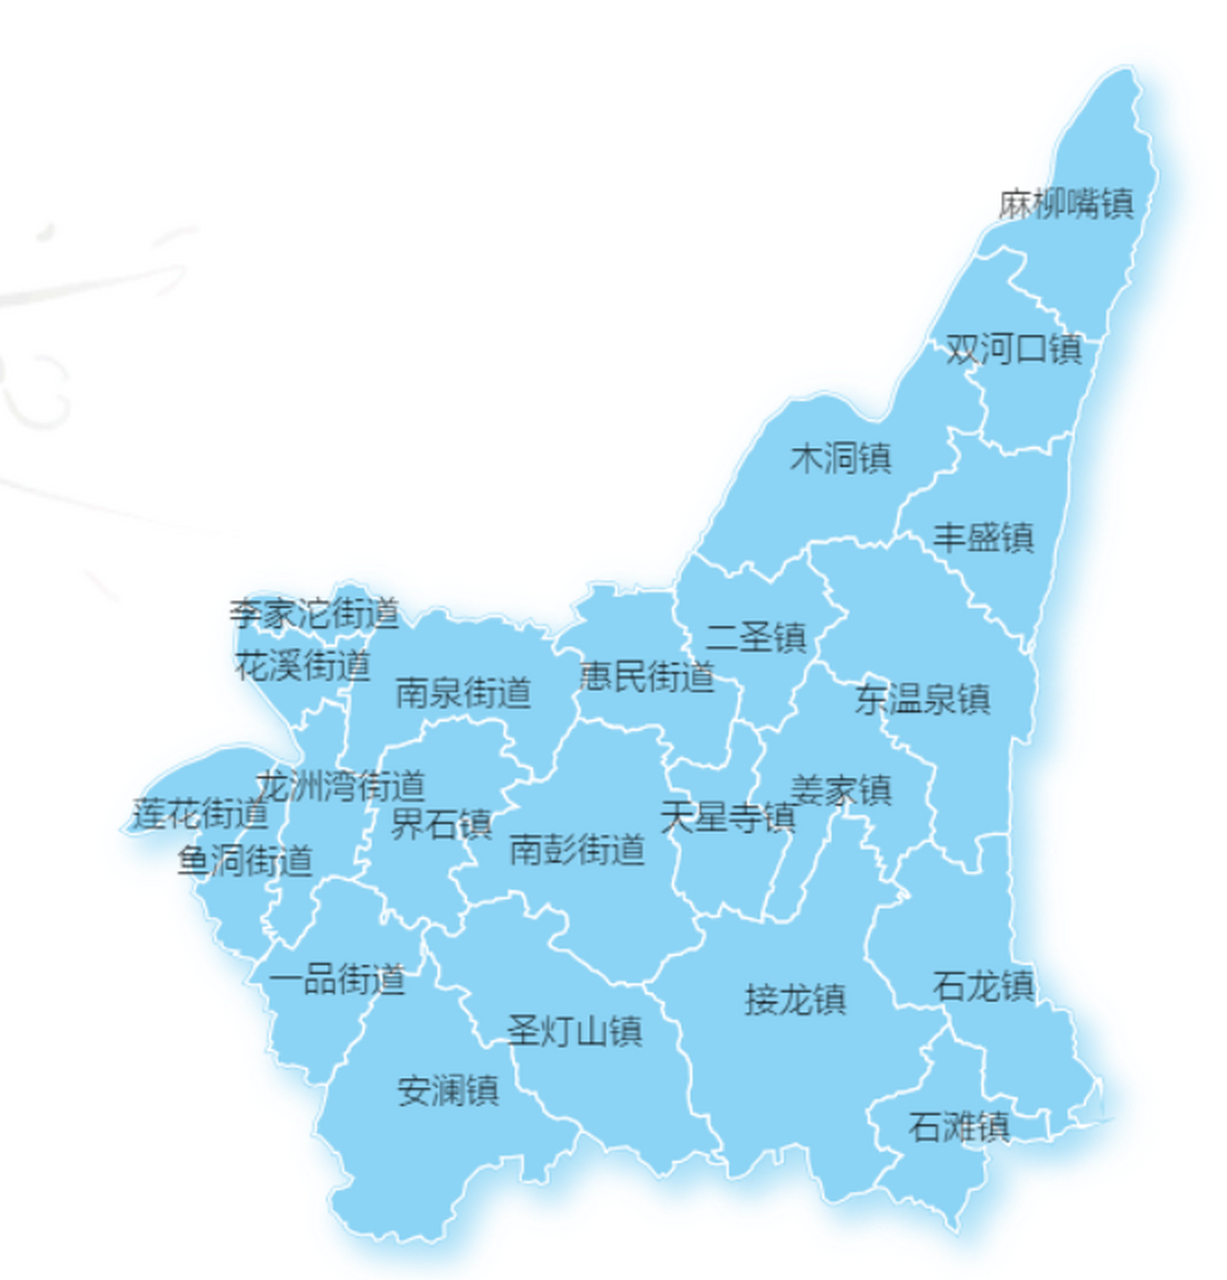 老巴县地图图片